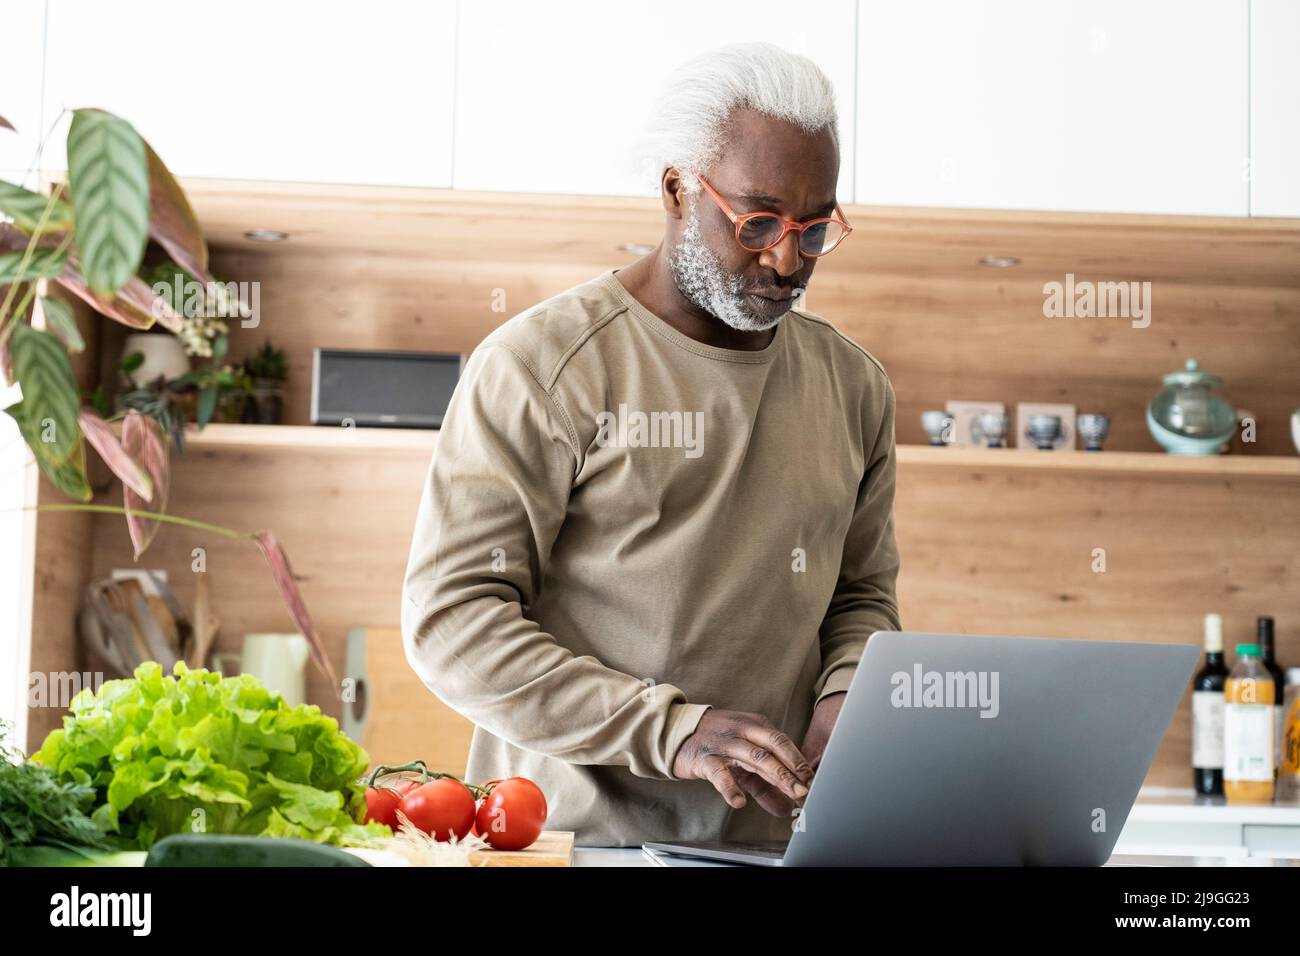 Homme senior regardant la recette sur un ordinateur portable dans la cuisine Banque D'Images